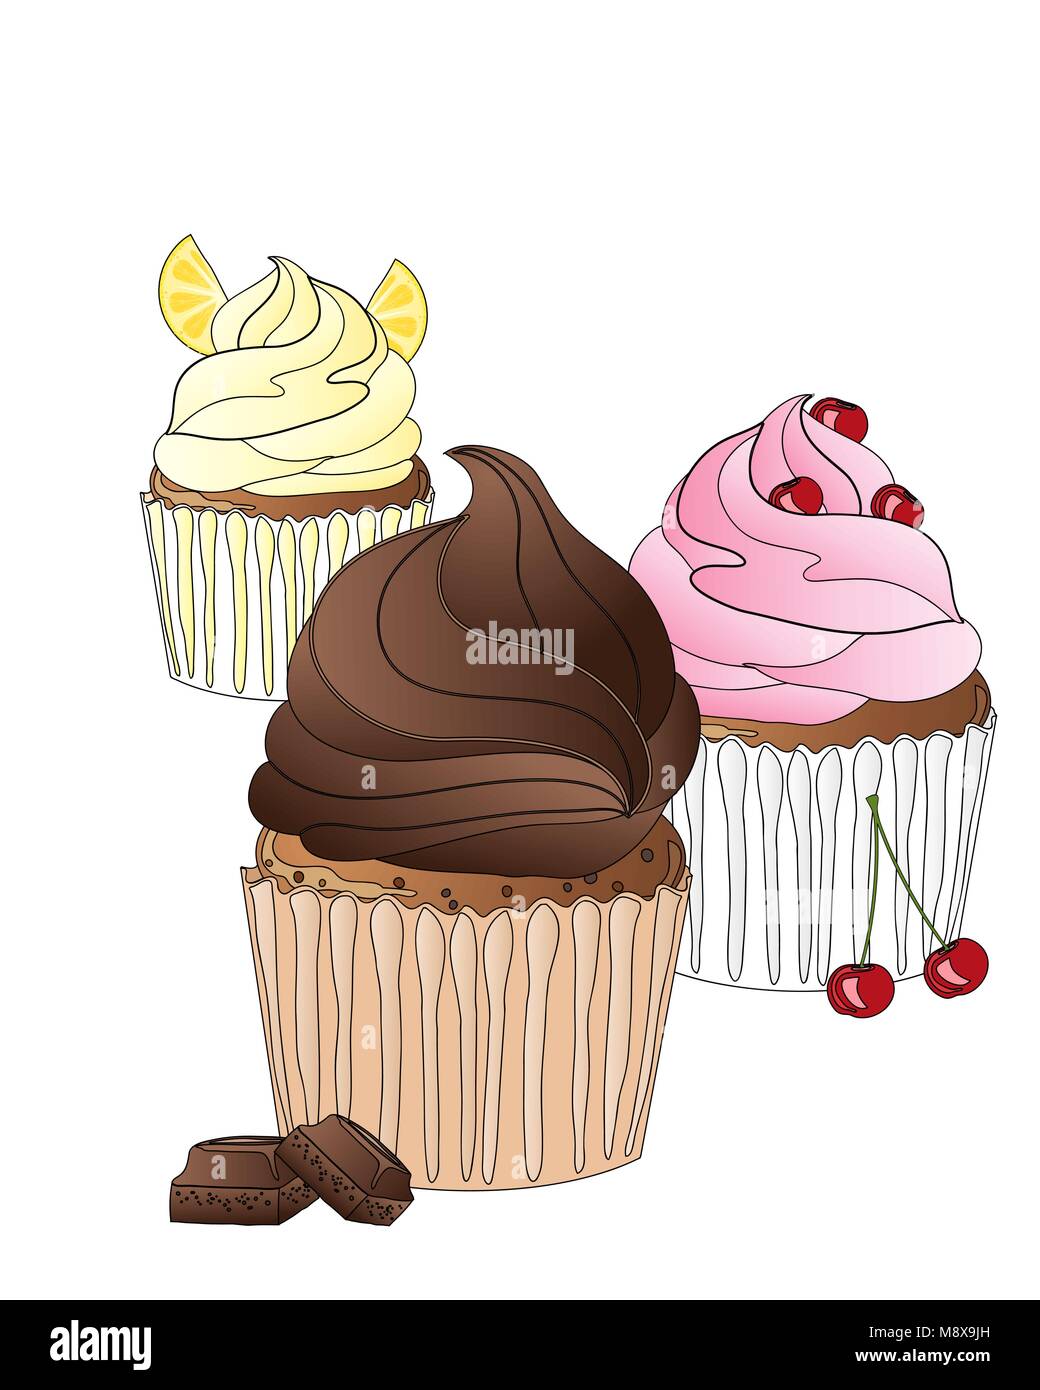 Un vecteur illustration en eps 10 format d'une annonce de boulangerie avec trois frosted cupcakes avec contour noir sur fond blanc Illustration de Vecteur